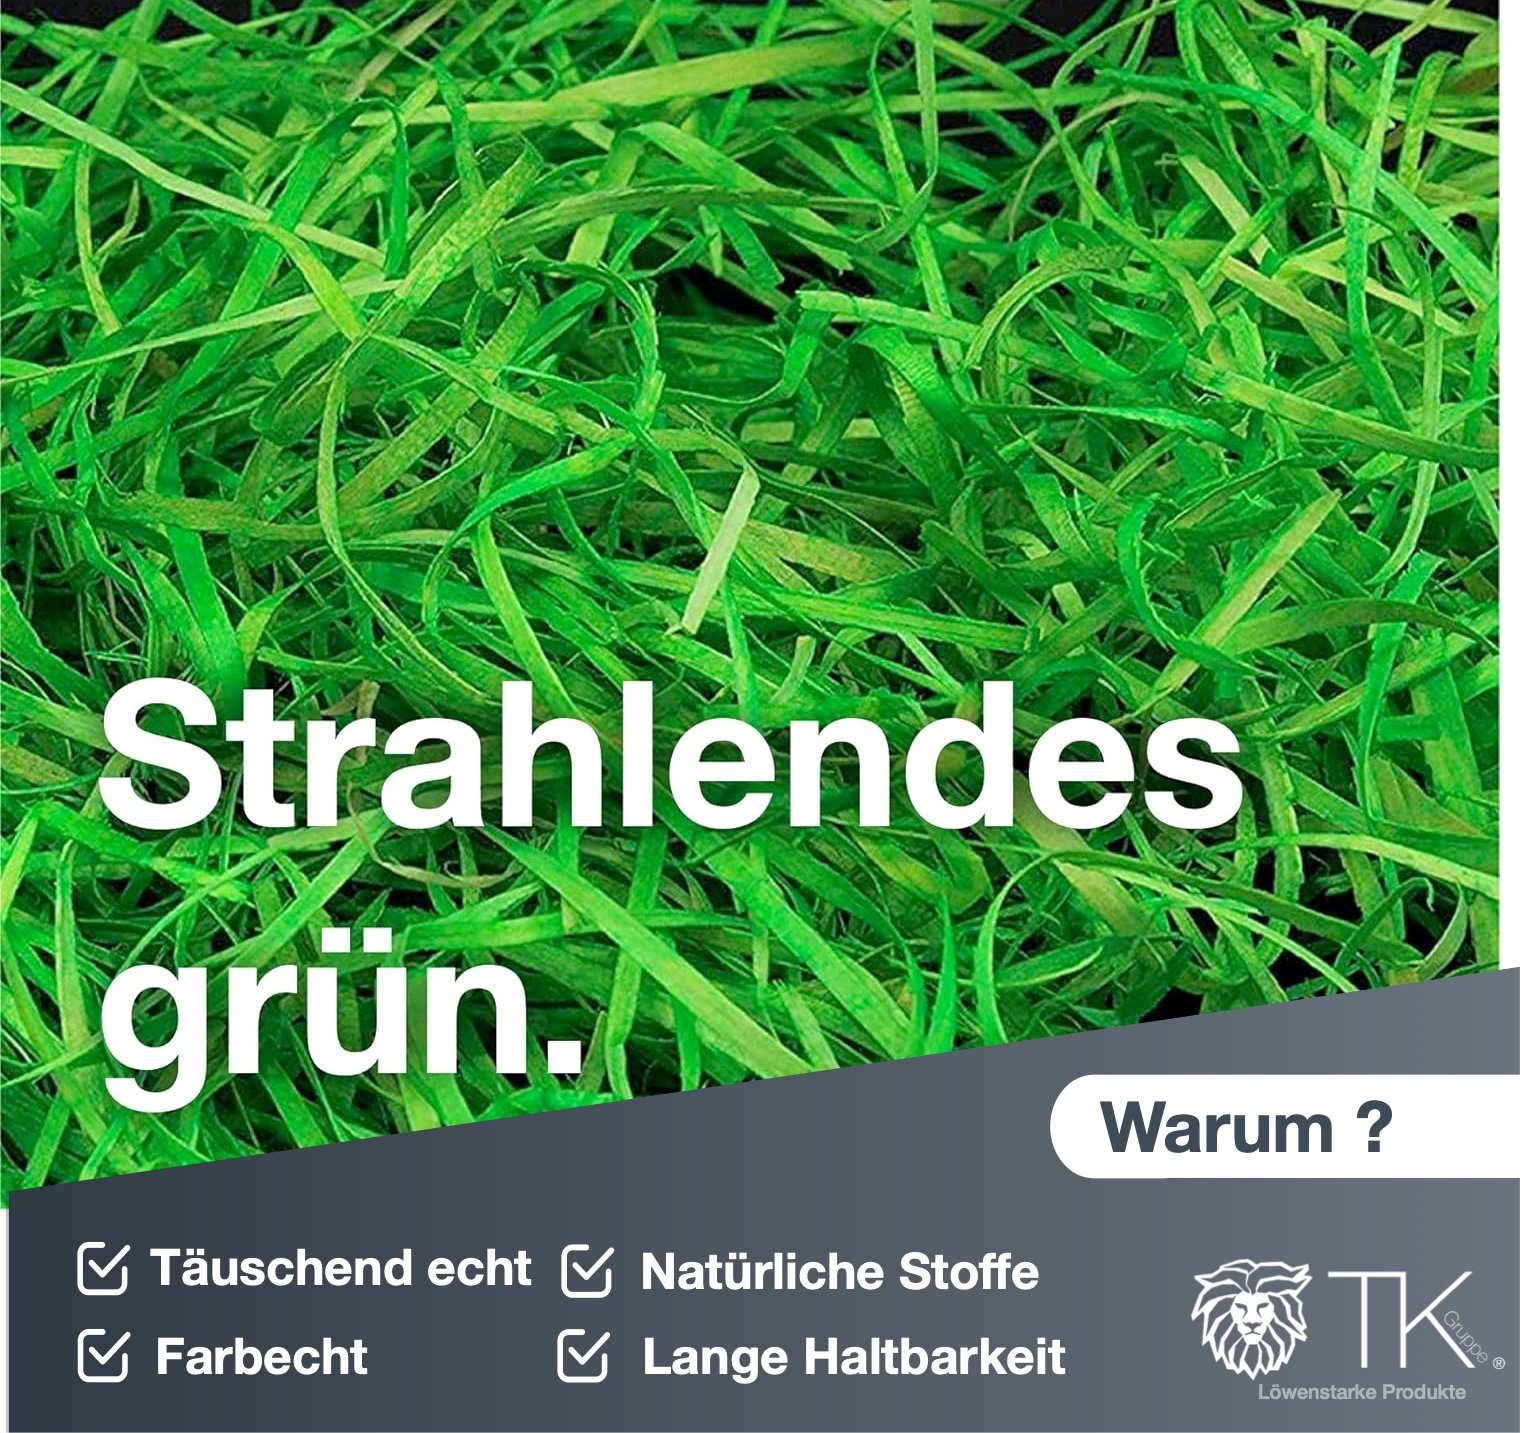 TK Gruppe Osternest 10x Gras für grün Ostern Deko Ostergras Dekoration 50gr